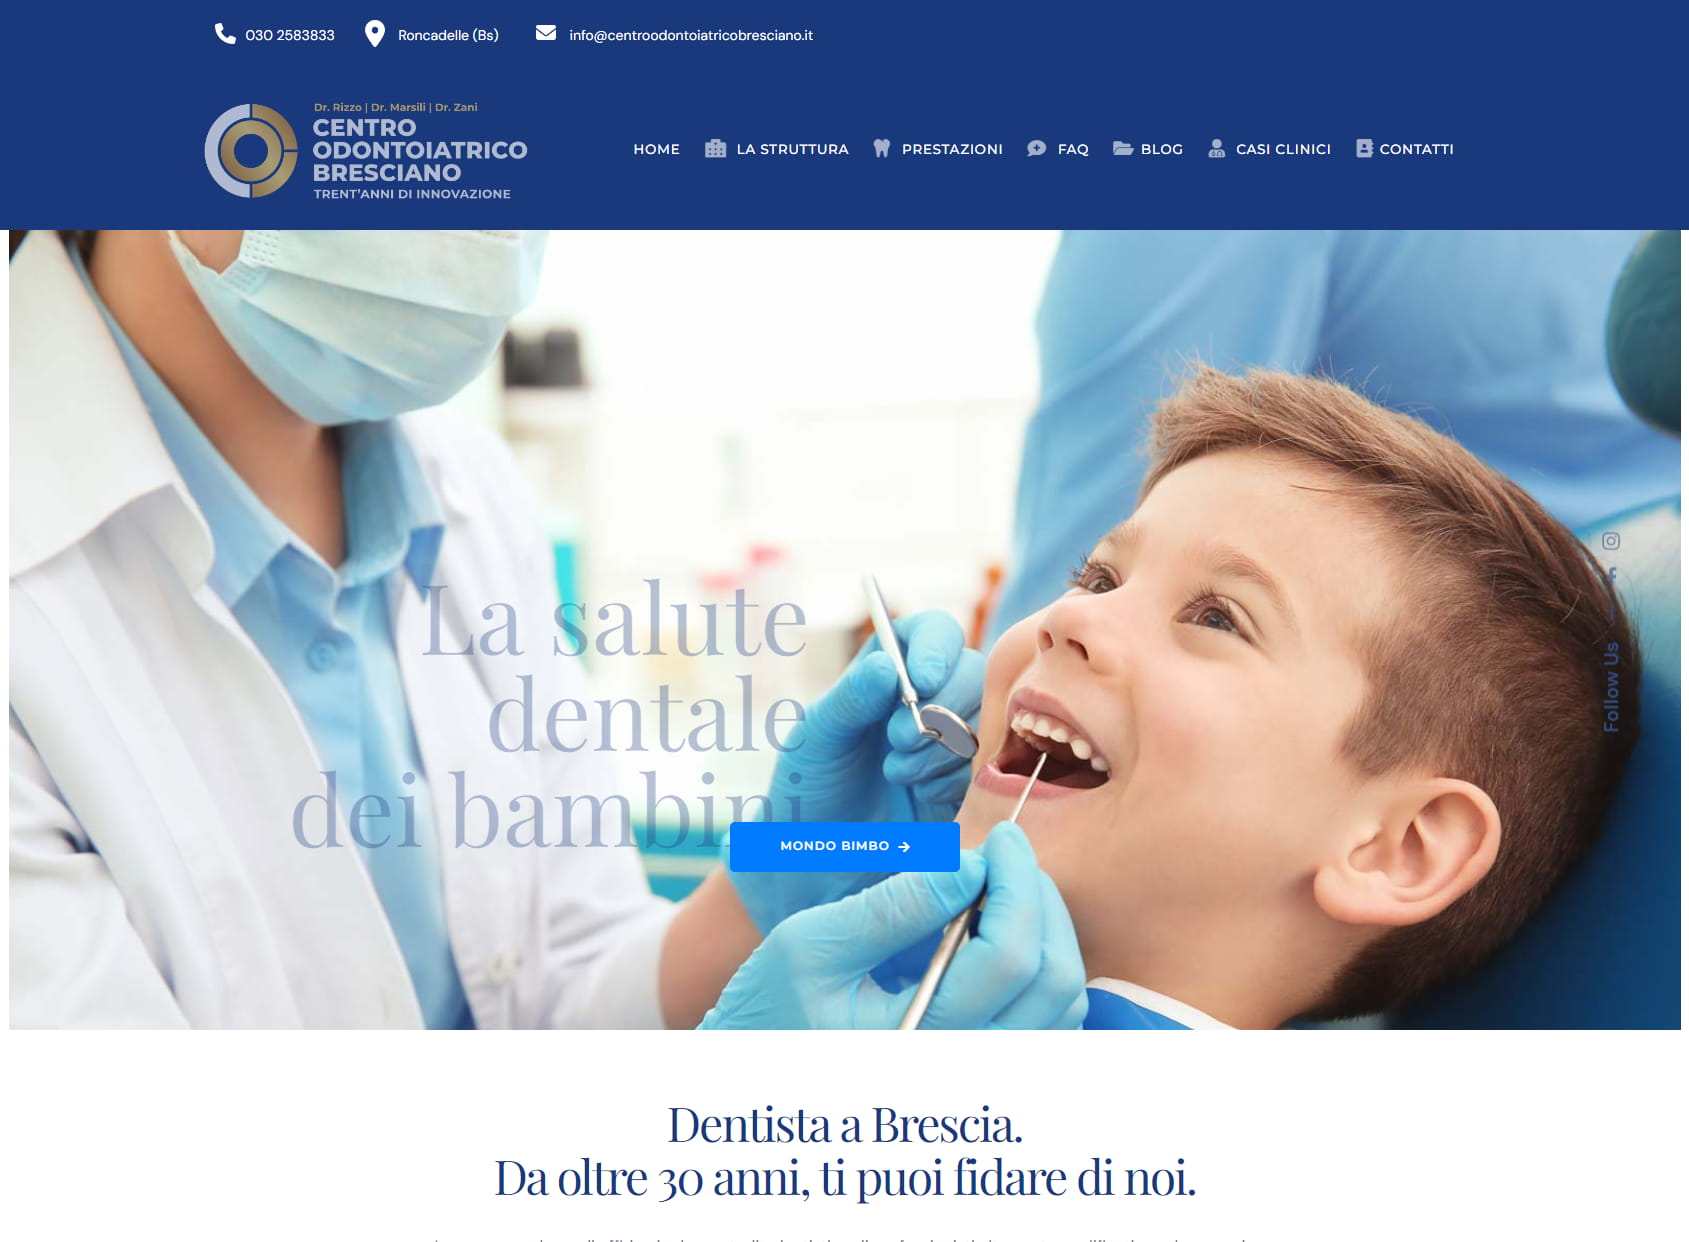 Centro Odontoiatrico Bresciano